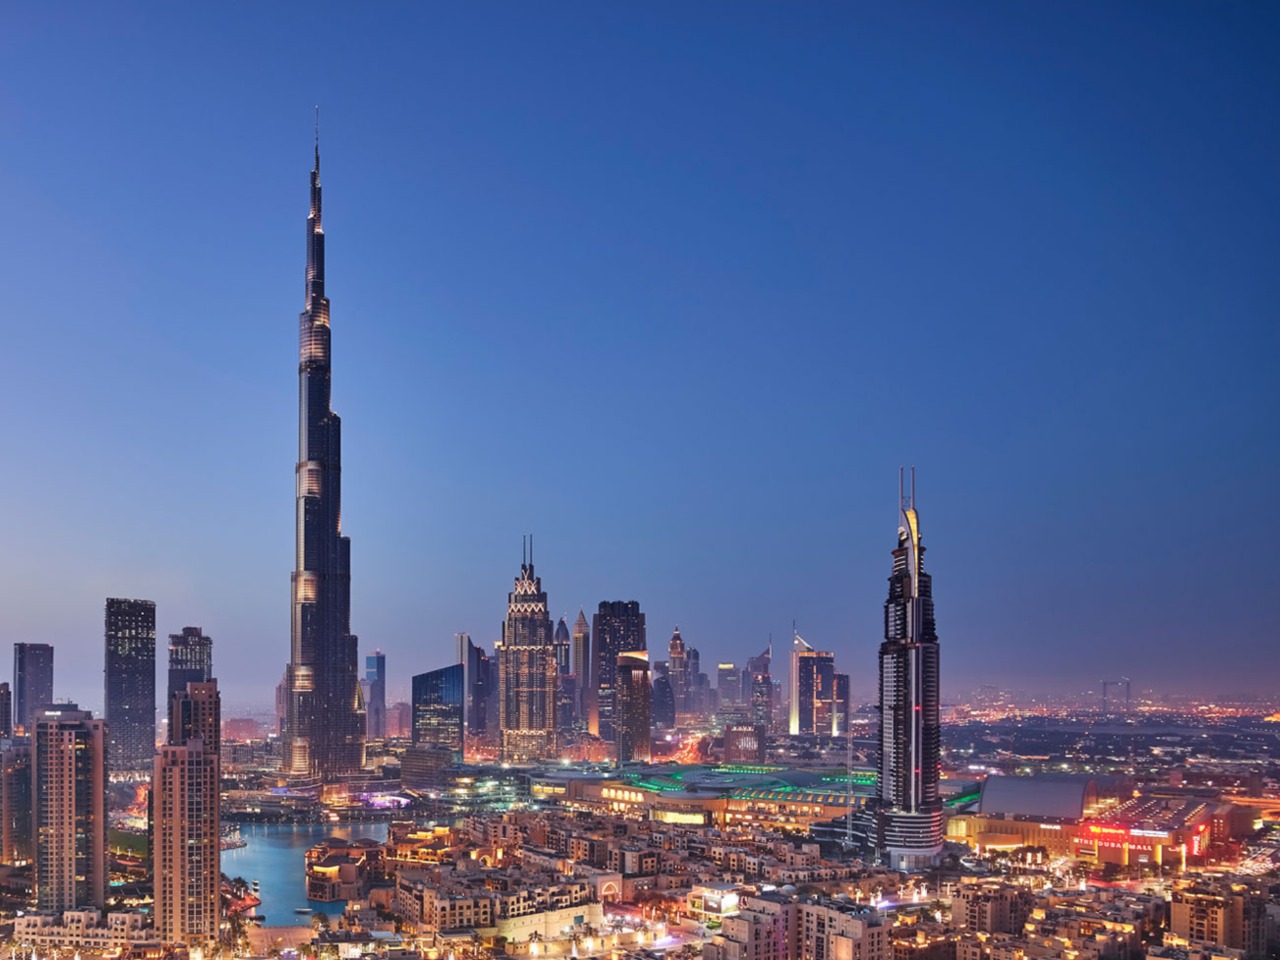 Подъем на высочайшее здание в мире — Burj Khalifa! | Цена 65$, отзывы, описание экскурсии